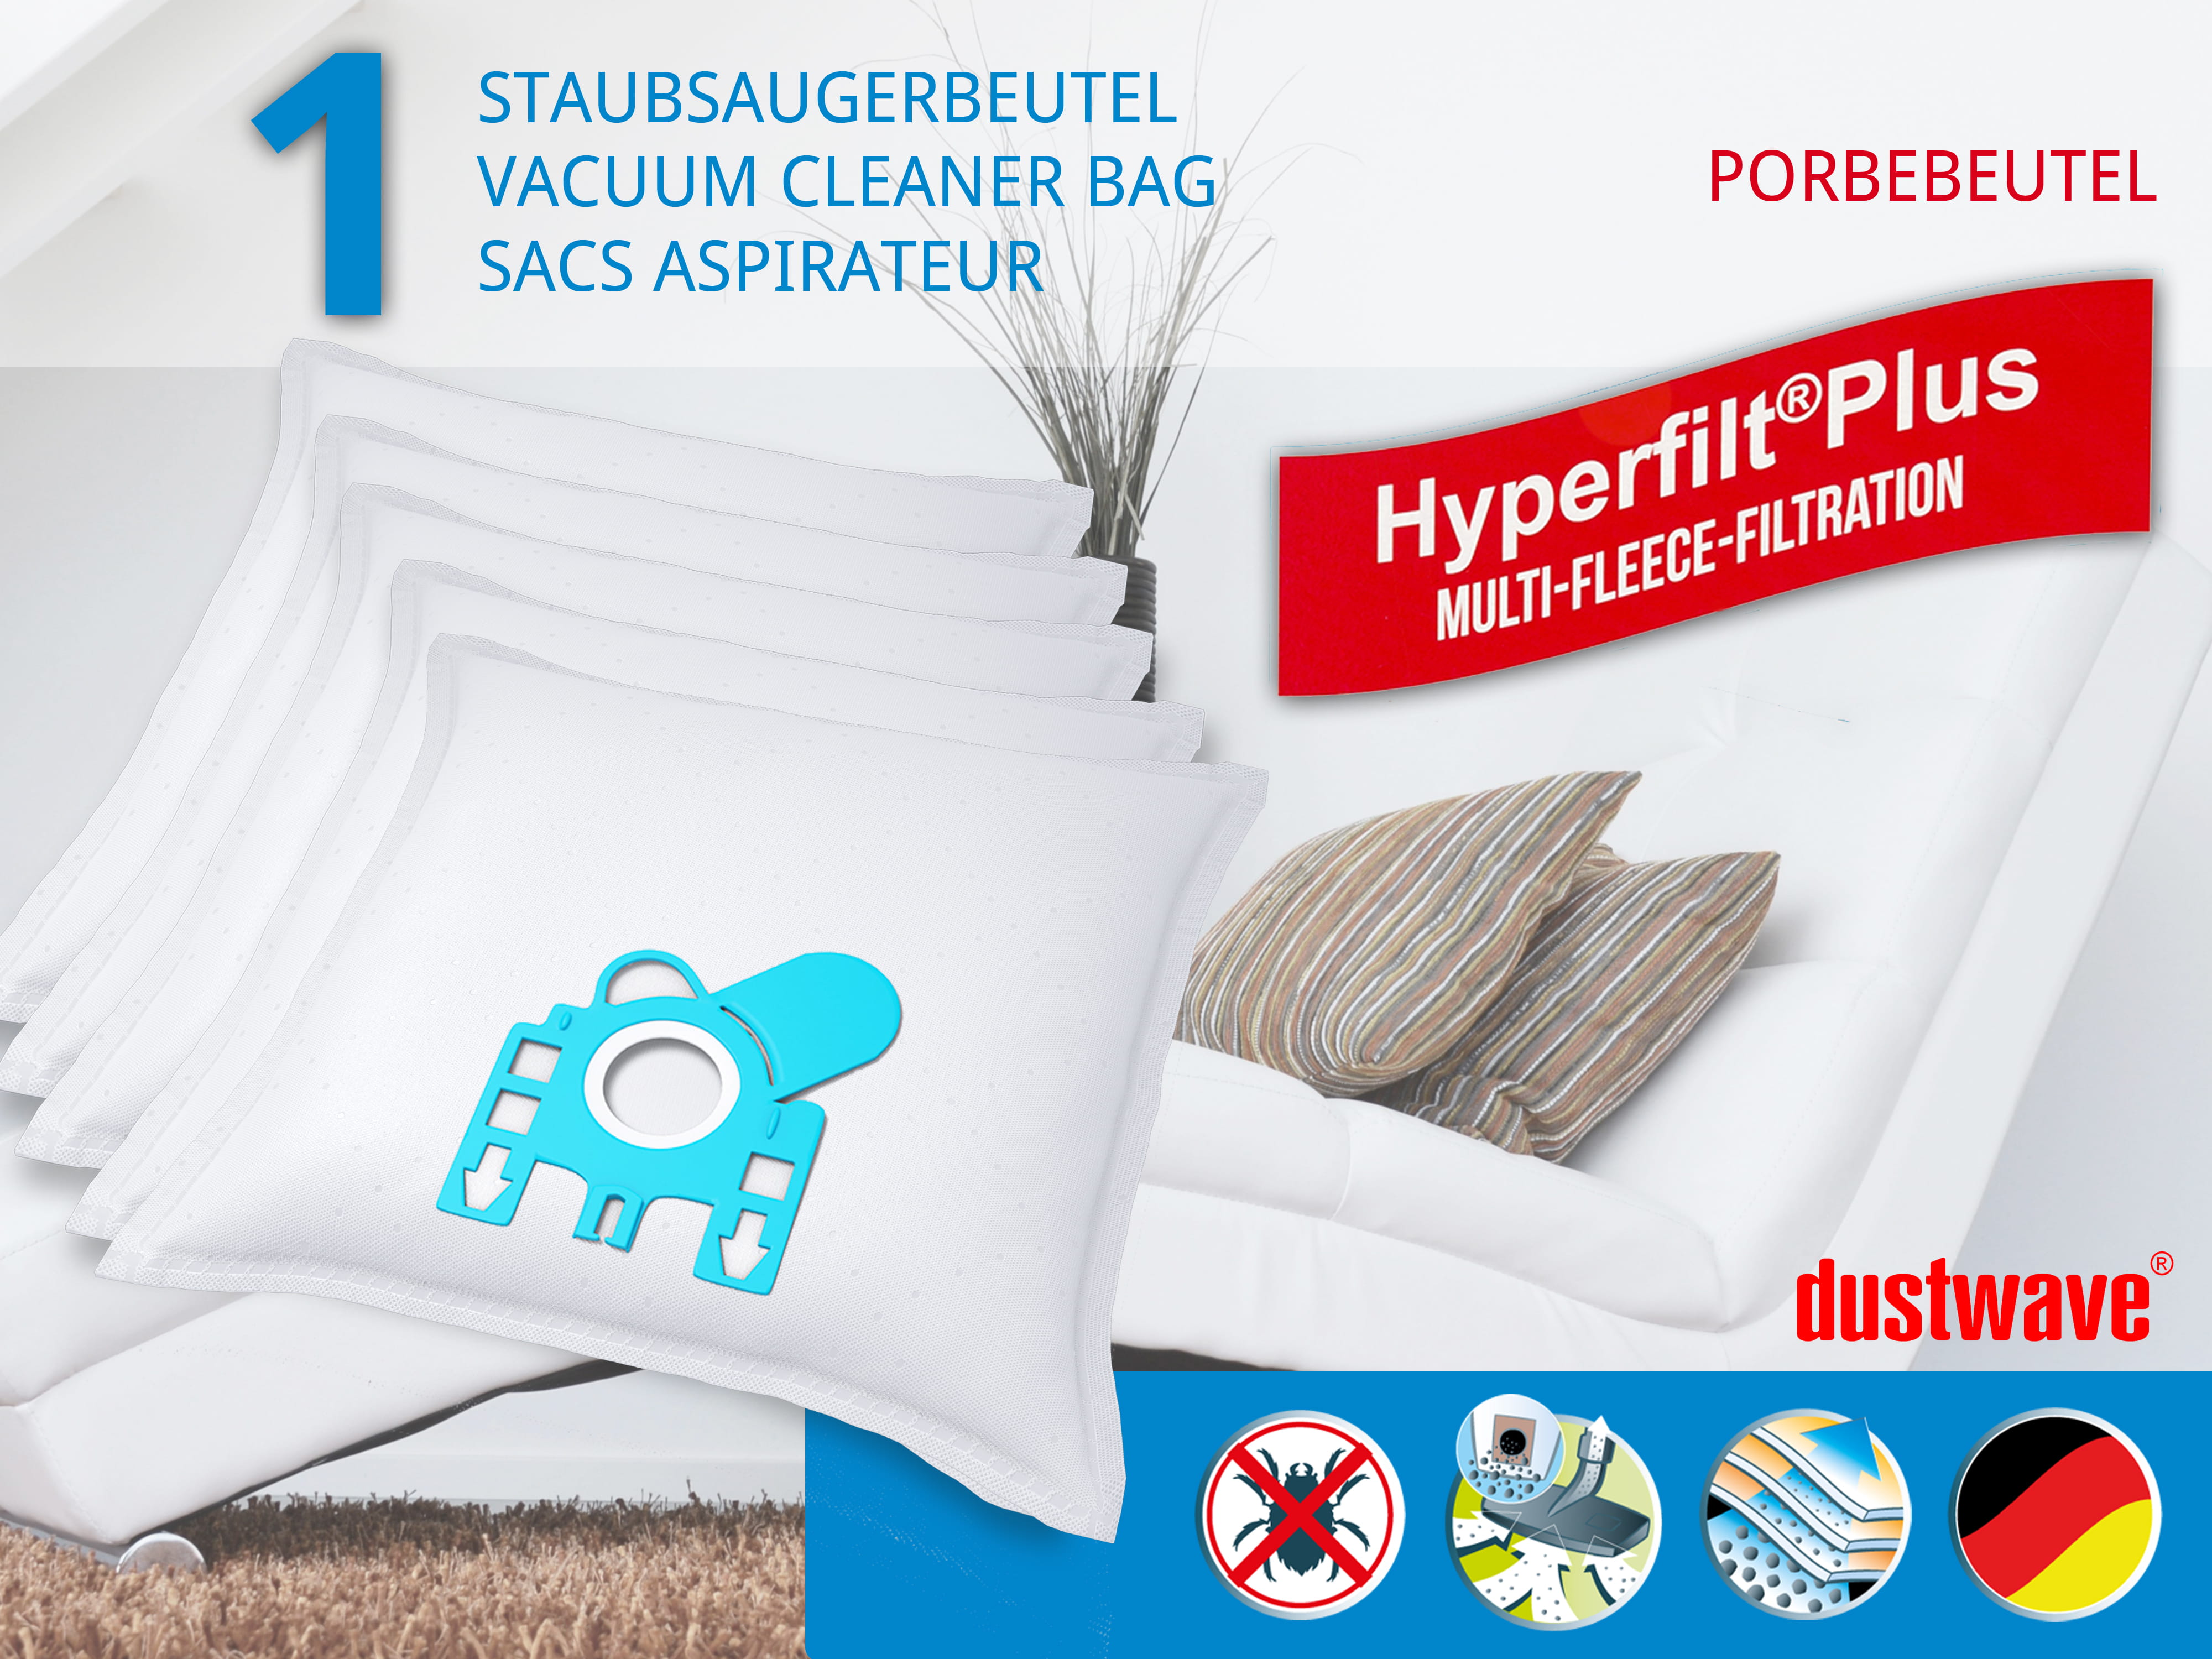 Dustwave® 1 Staubsaugerbeutel für Hoover Hypoallergenic 1500 - hocheffizient, mehrlagiges Mikrovlies mit Hygieneverschluss - Made in Germany